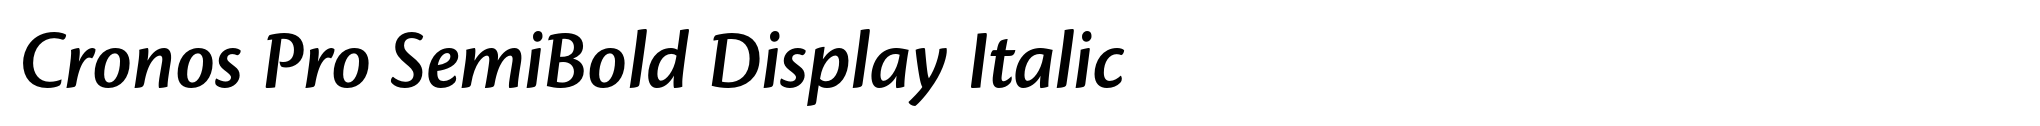 Cronos Pro SemiBold Display Italic image